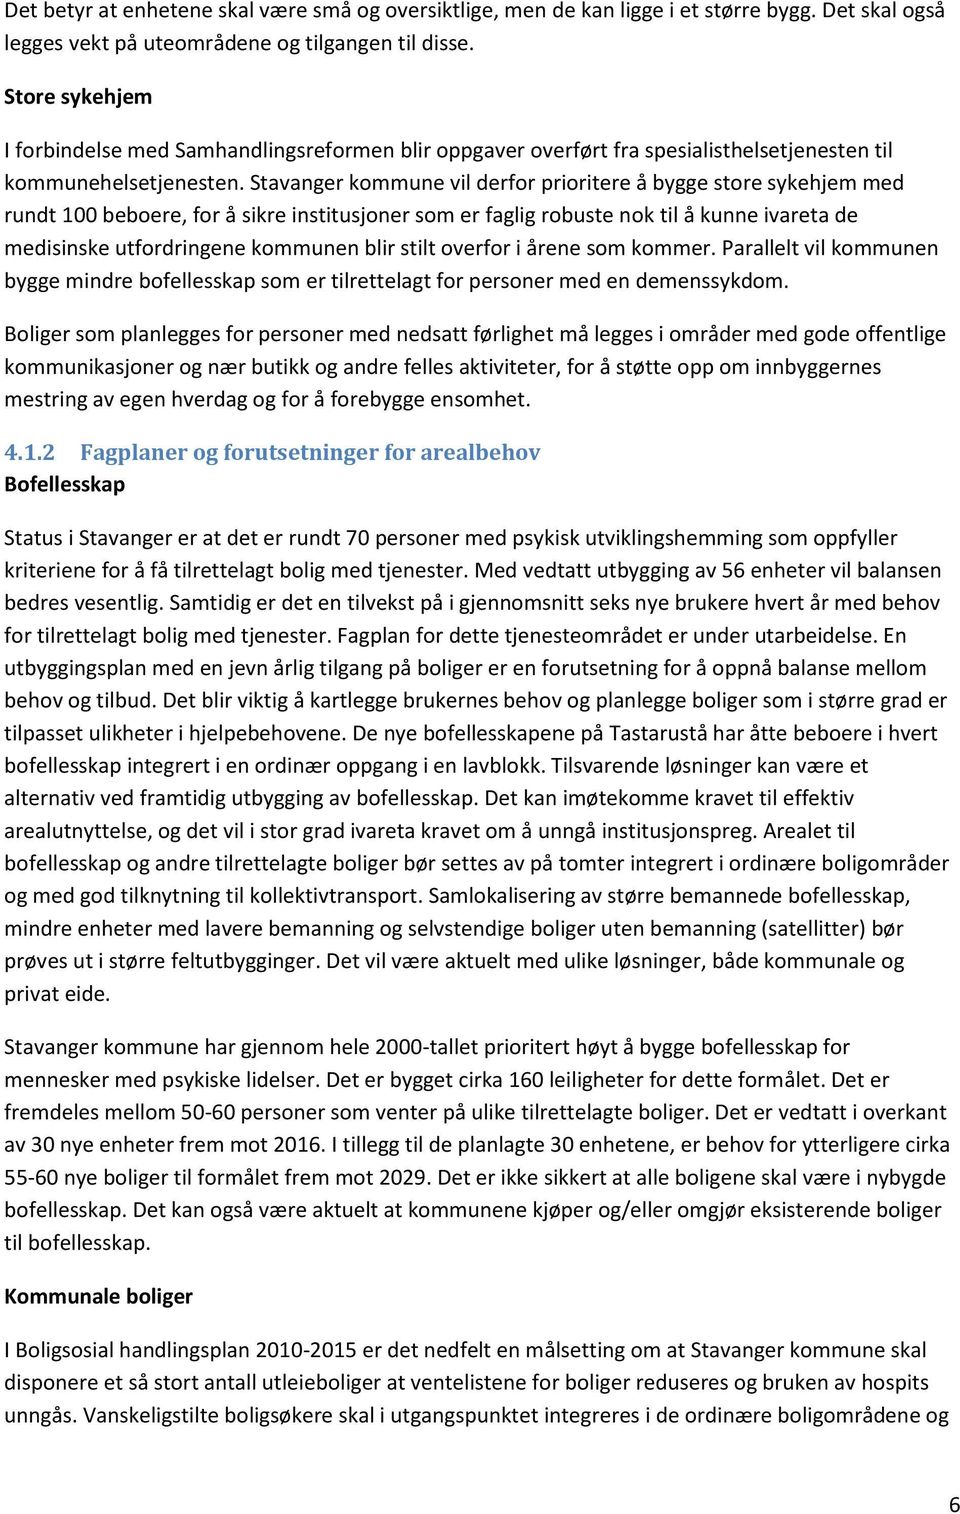 Stavanger kommune vil derfor prioritere å bygge store sykehjem med rundt 100 beboere, for å sikre institusjoner som er faglig robuste nok til å kunne ivareta de medisinske utfordringene kommunen blir